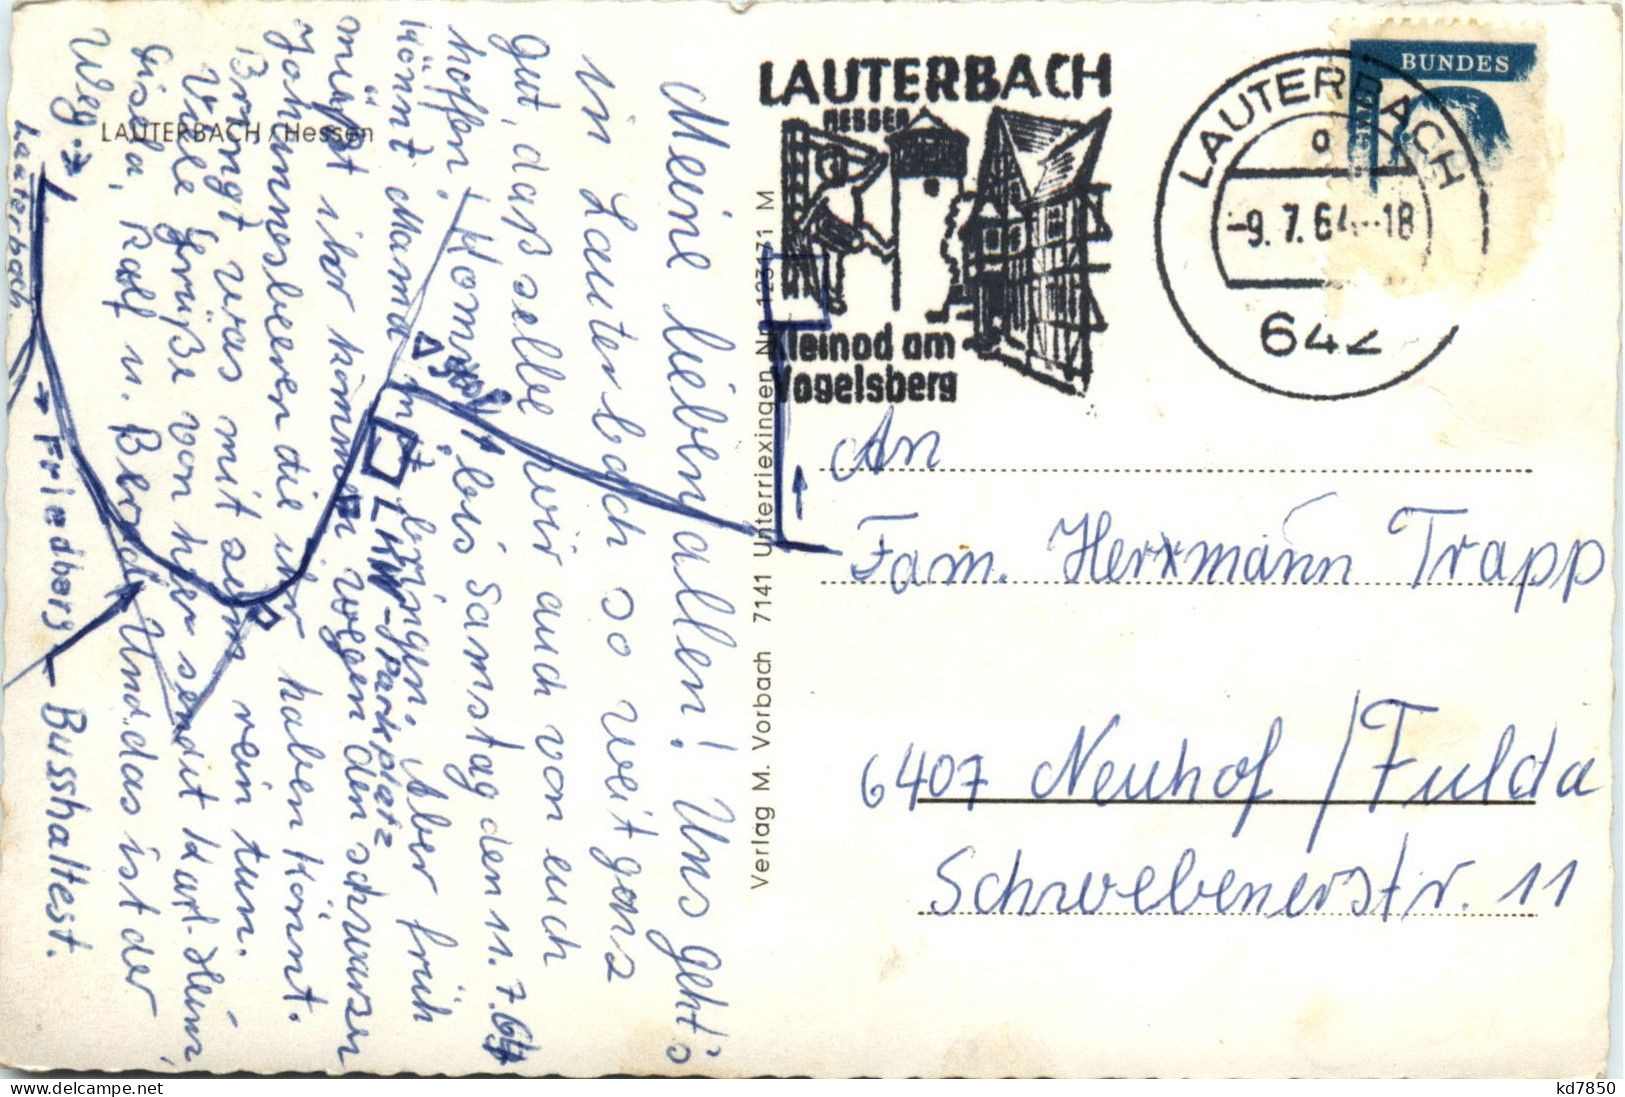 Lauterbach - Lauterbach